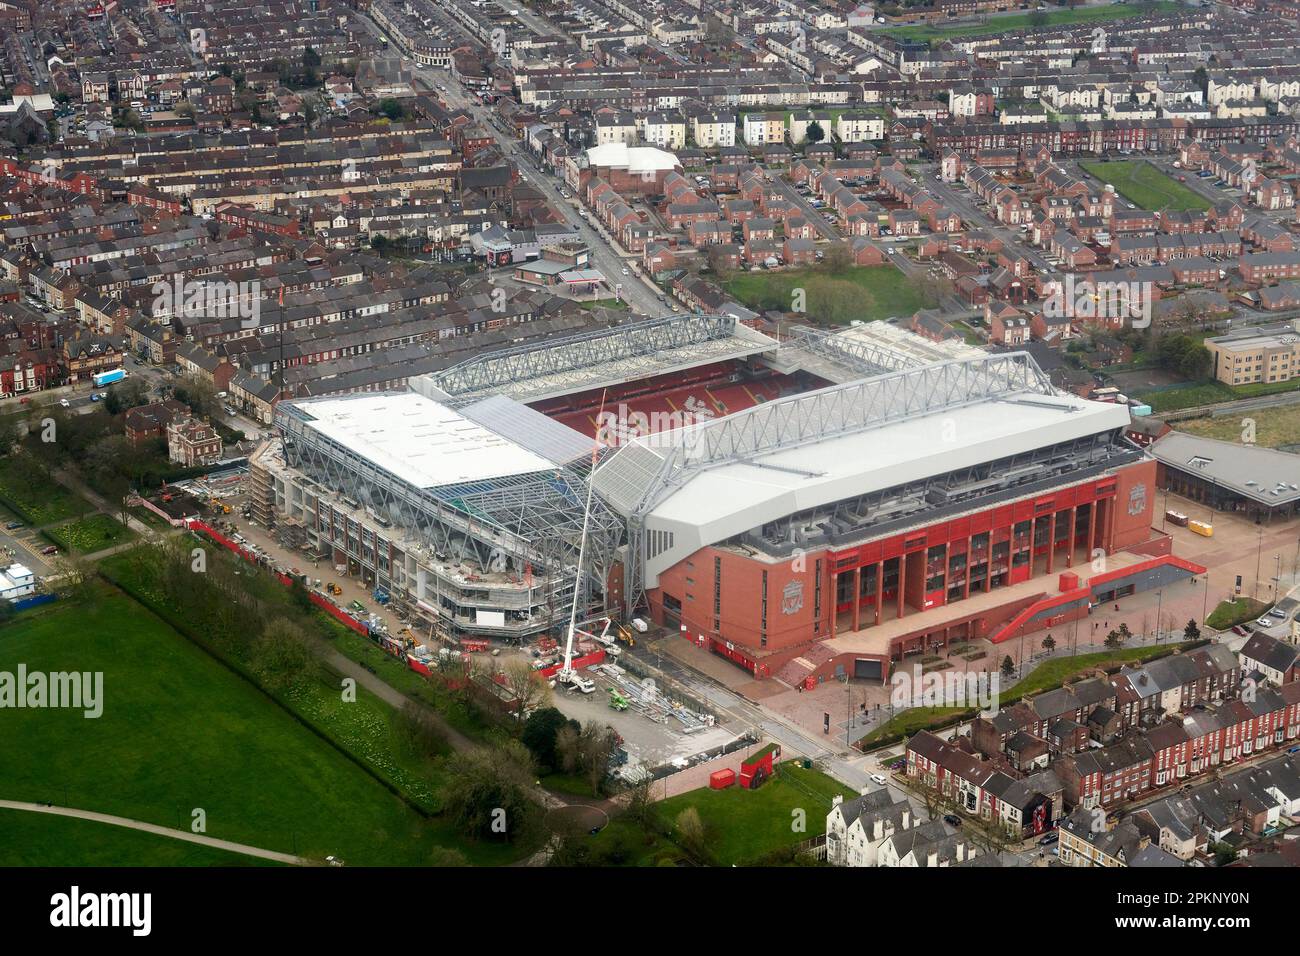 Liverpool Football Club, Anfield, mostra lavori di costruzione di ulteriori opere di ampliamento dello stand, Merseyside, Inghilterra nord-occidentale, dall'aria Foto Stock